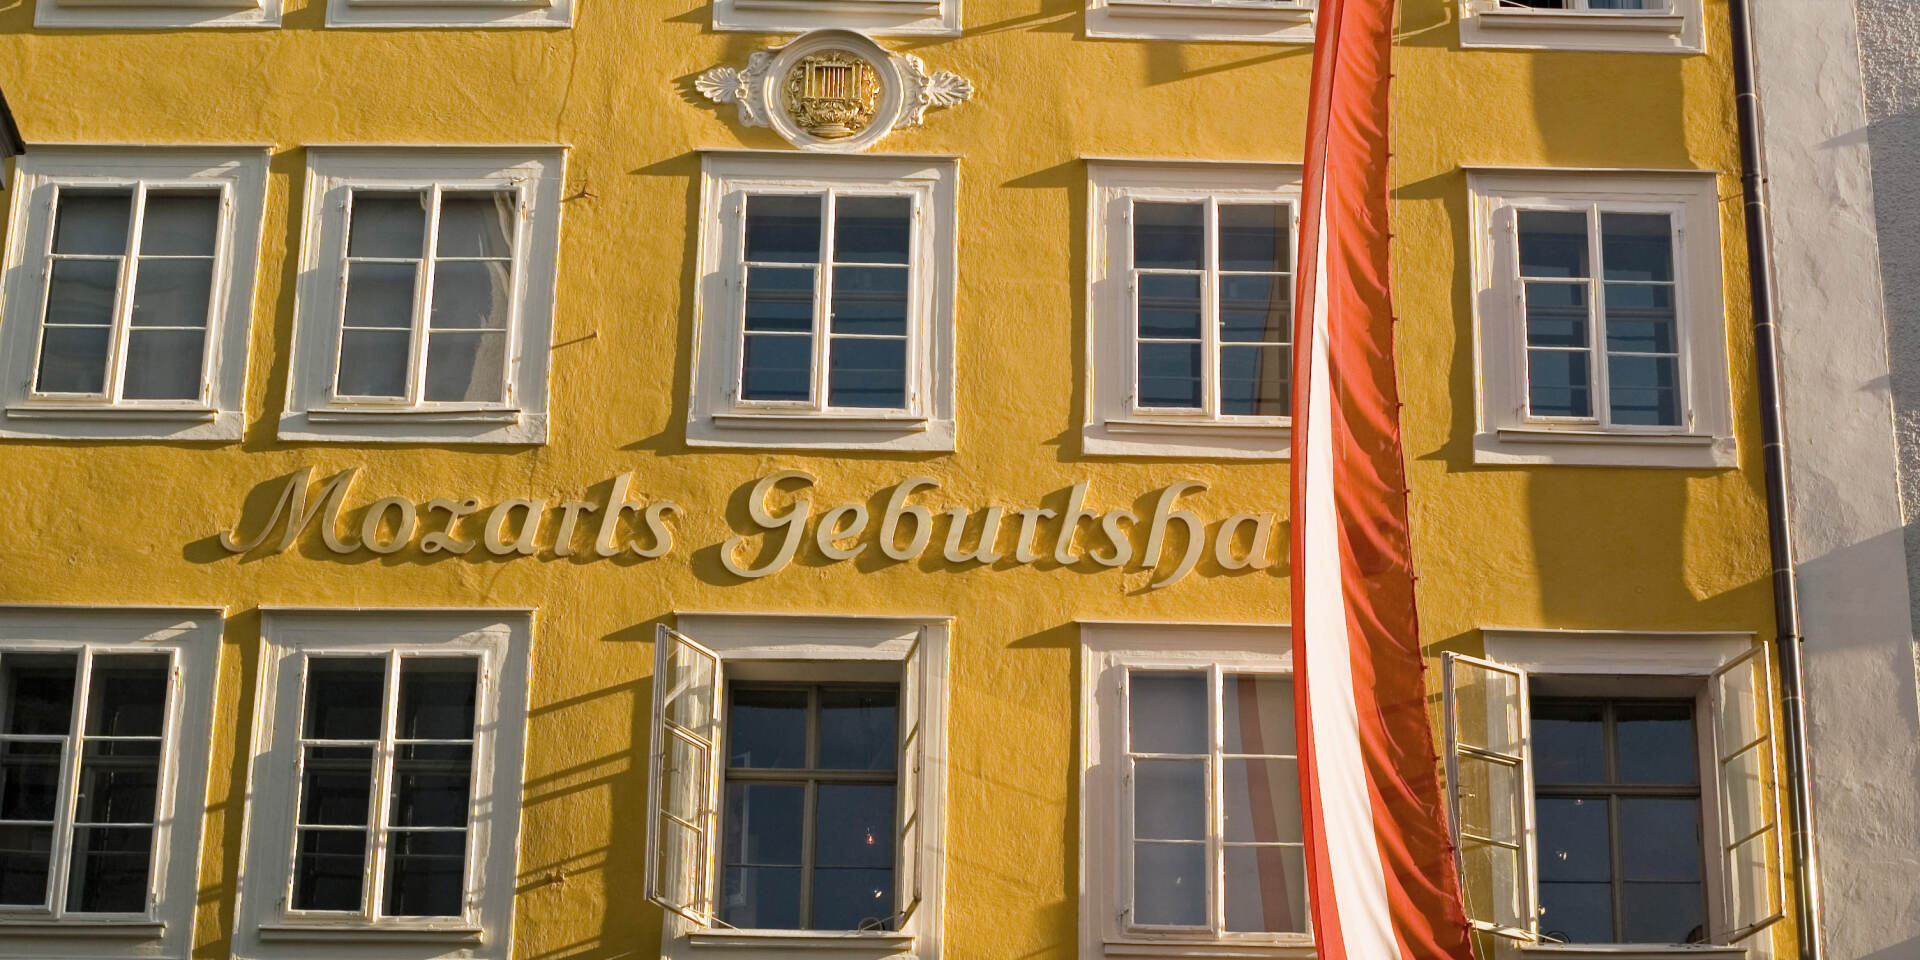 Mozart's Birth Place © Tourismus Salzburg GmbH